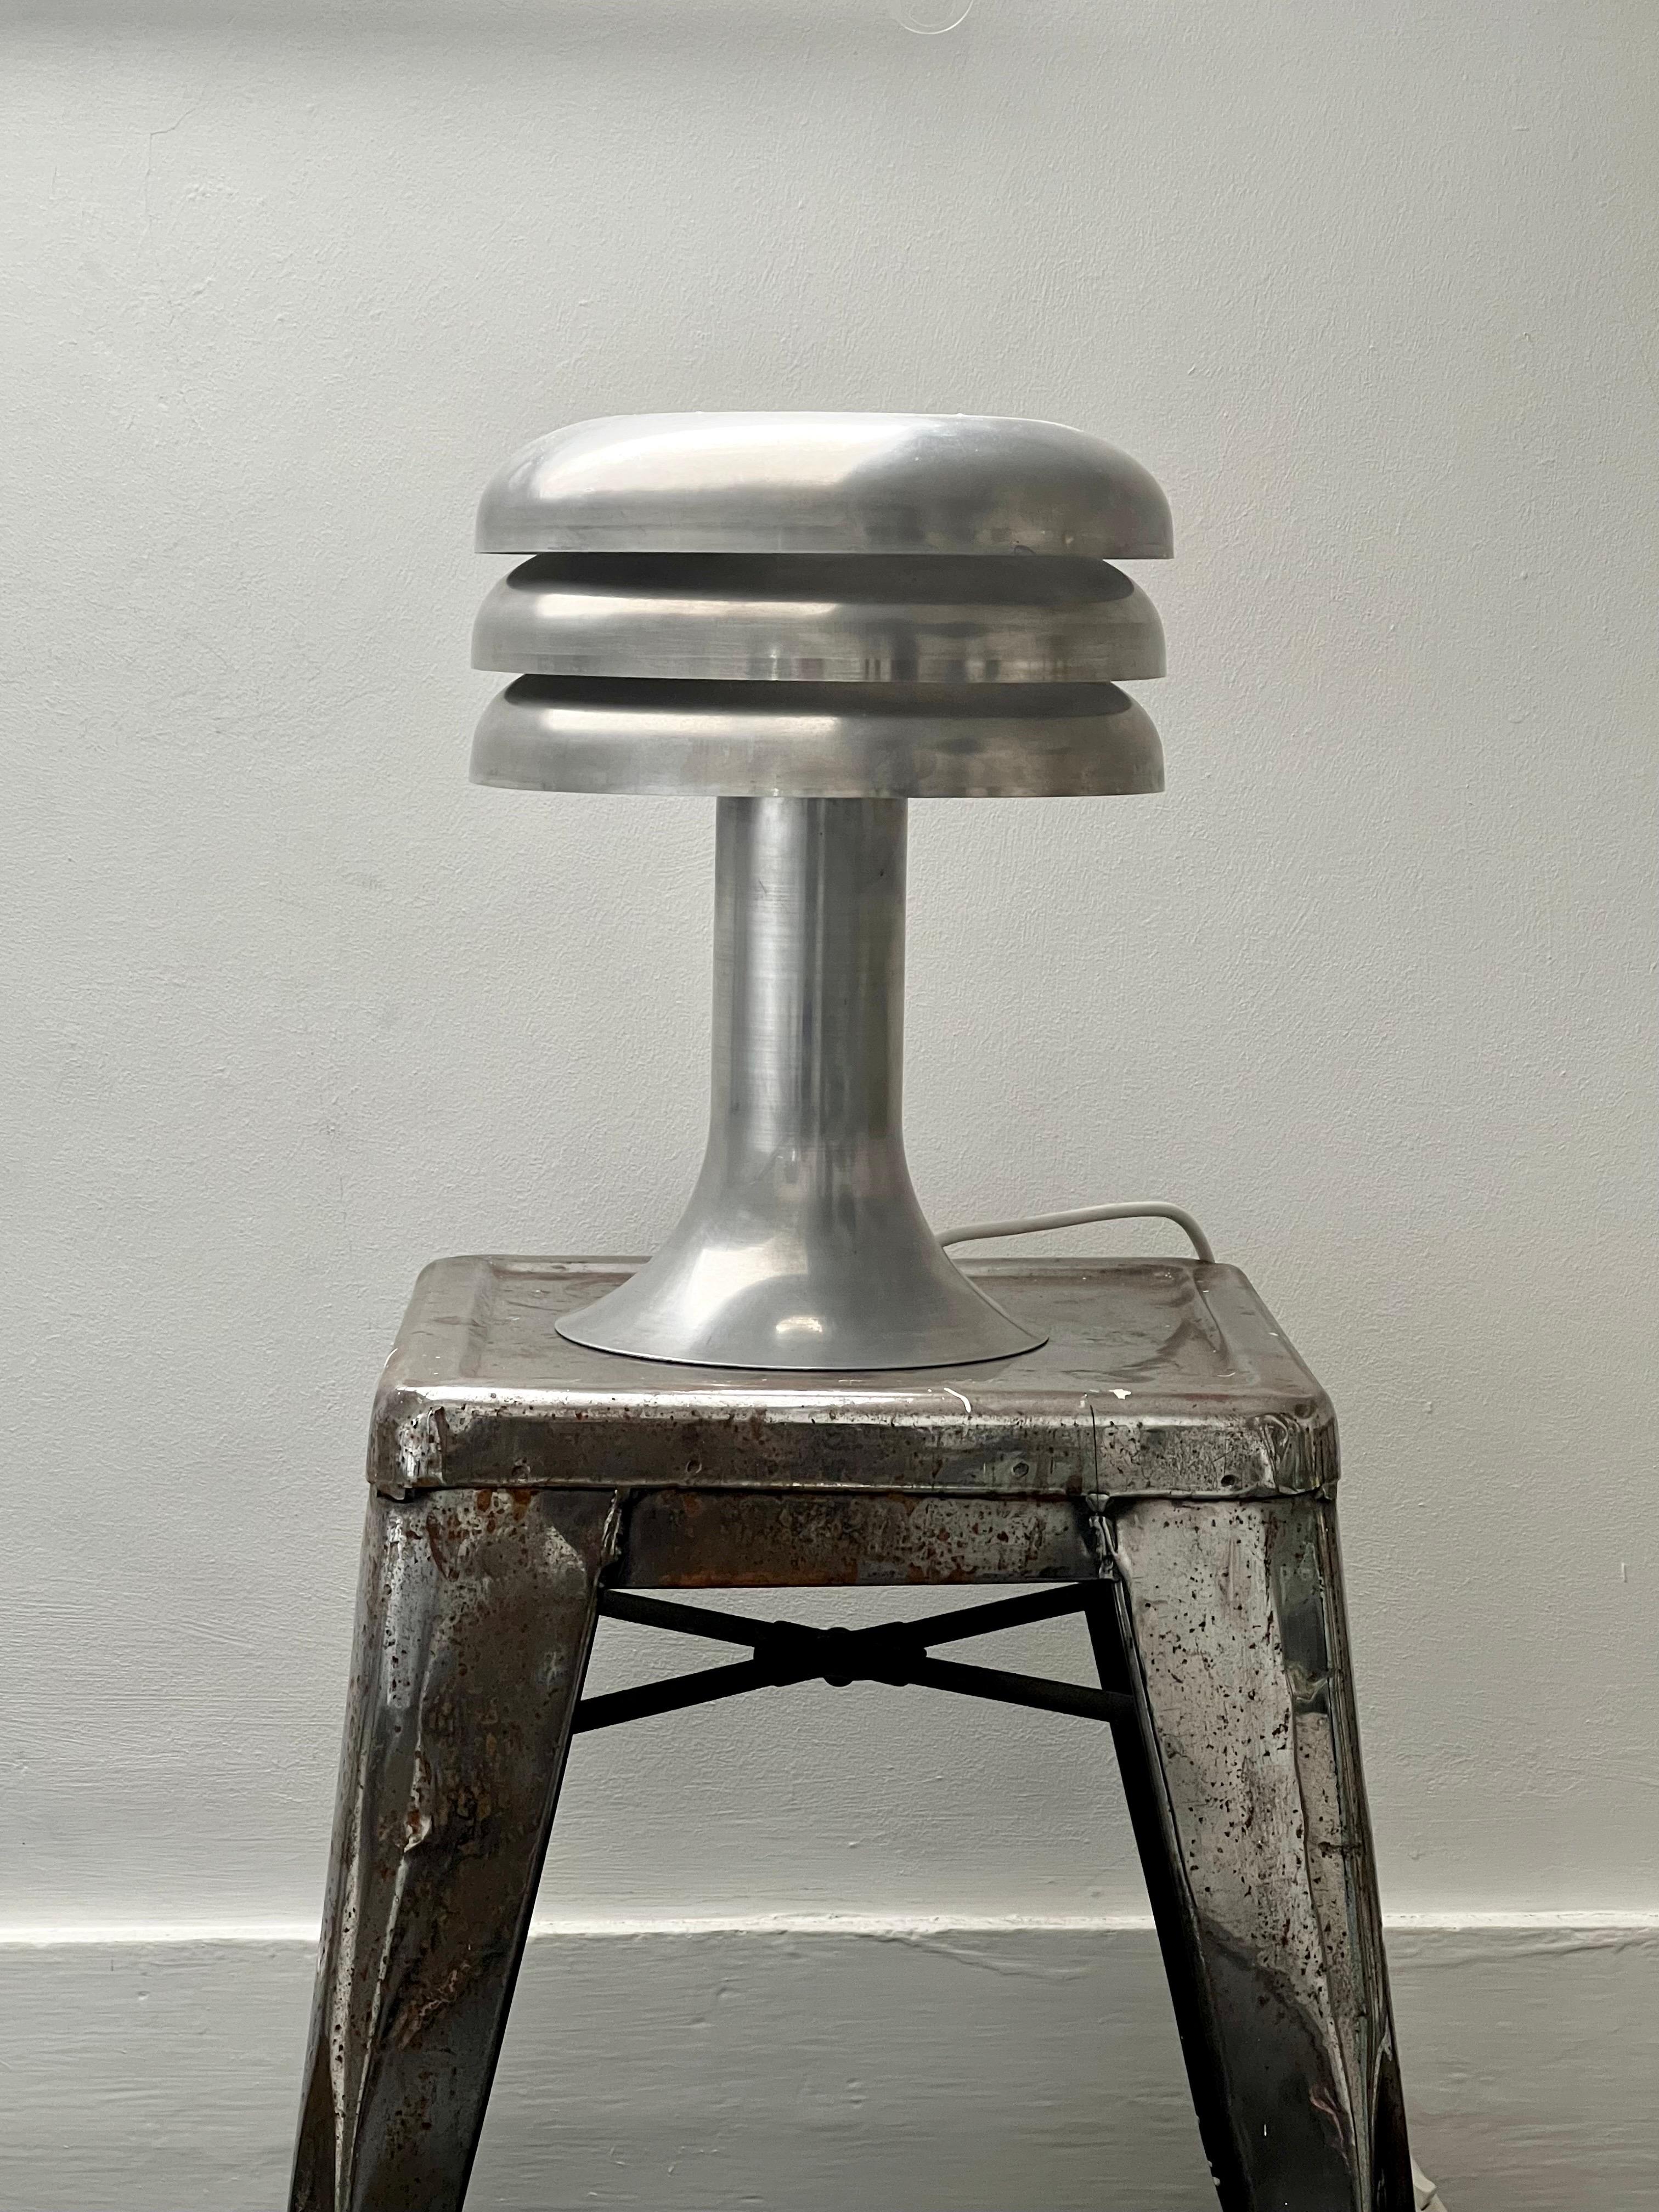 Tischleuchte Modell BN-25 von Hans Agne Jakobsson, Schweden, 1960er Jahre. 

Lampe aus gedrehtem Aluminium mit integriertem dreistufigen Schirm (innen weiß), der ein angenehmes Umgebungslicht erzeugt. Die Lampe ist in gutem Vintage-Zustand. Er wurde